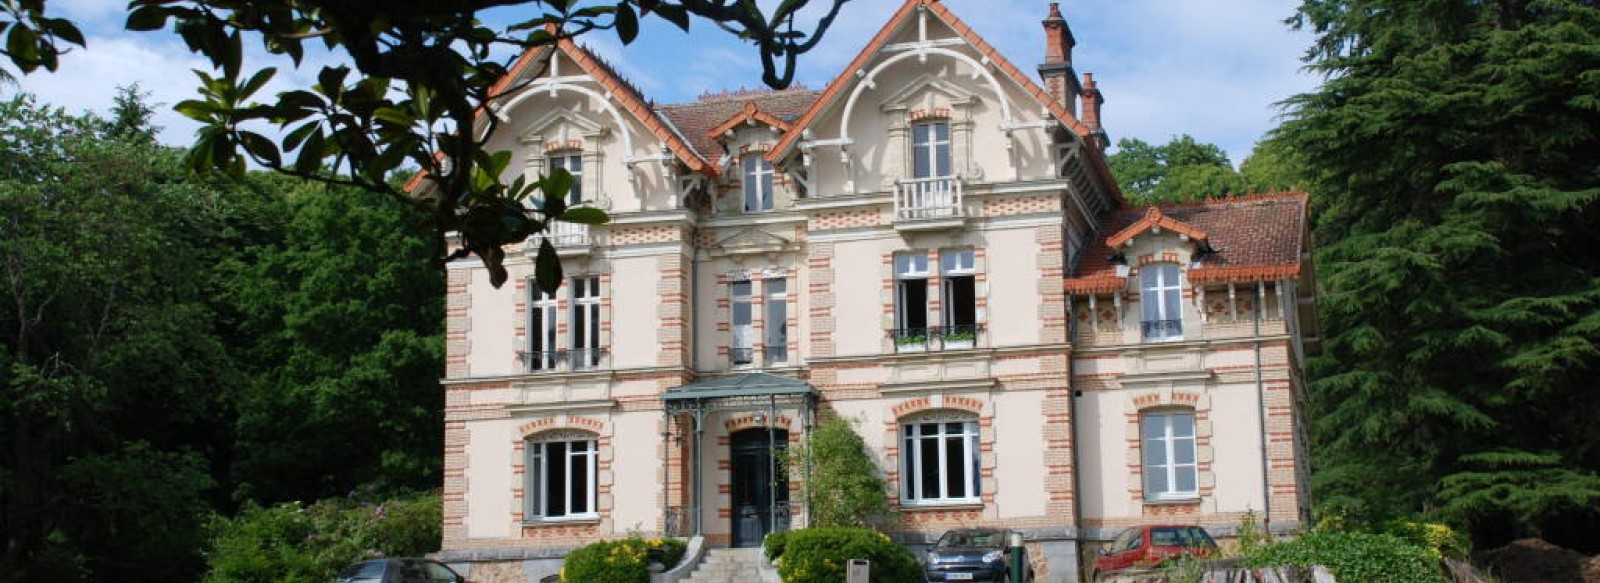 Chateau du Haut-Bois